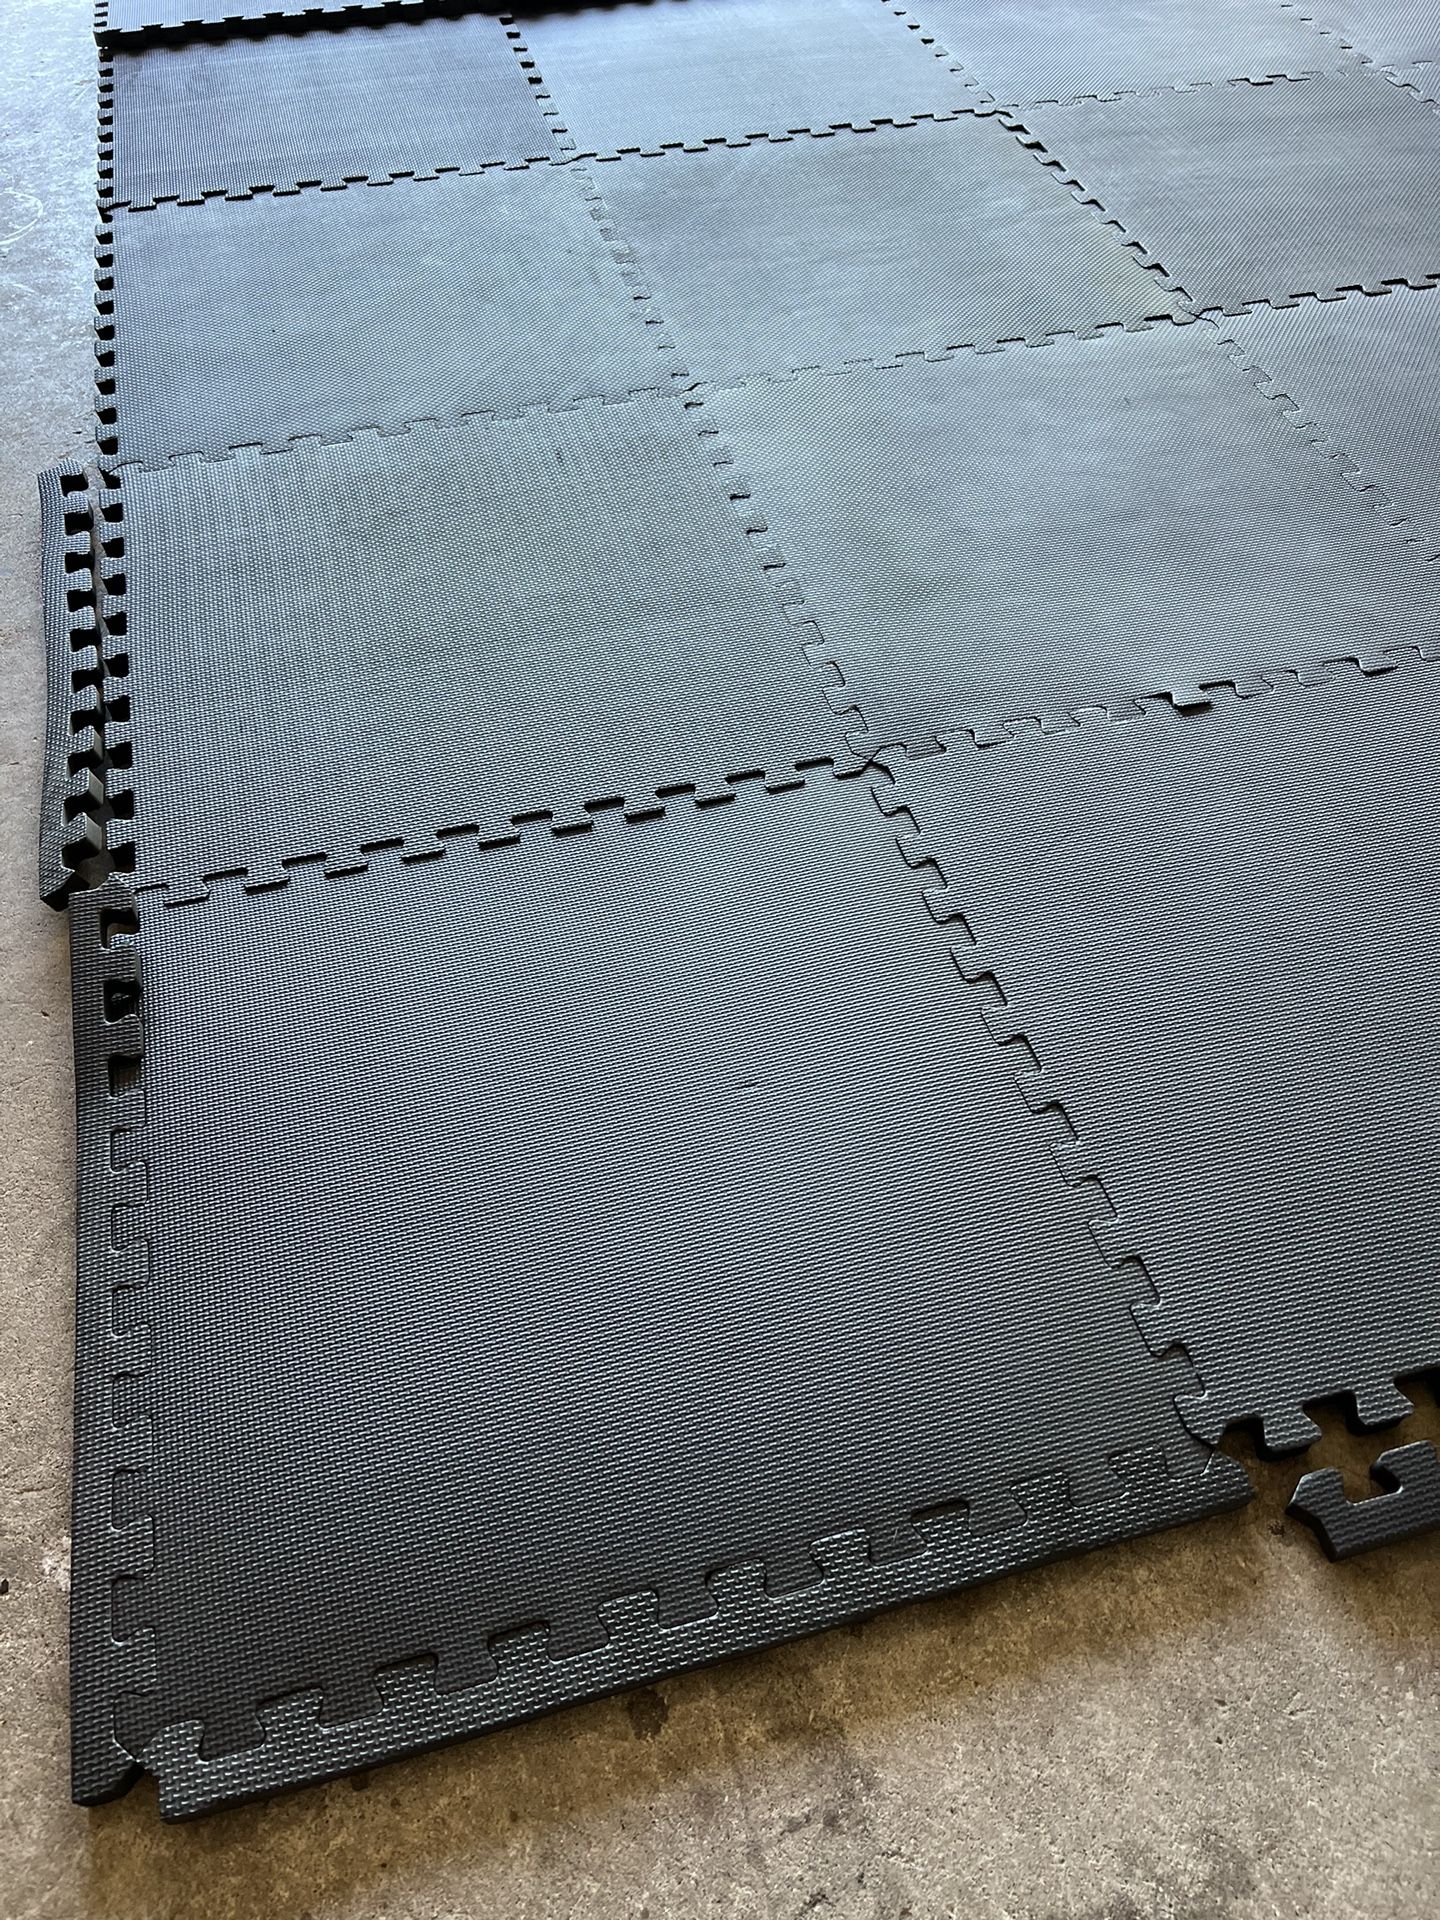 3/8” workout flooring tiles 10’ x 10’